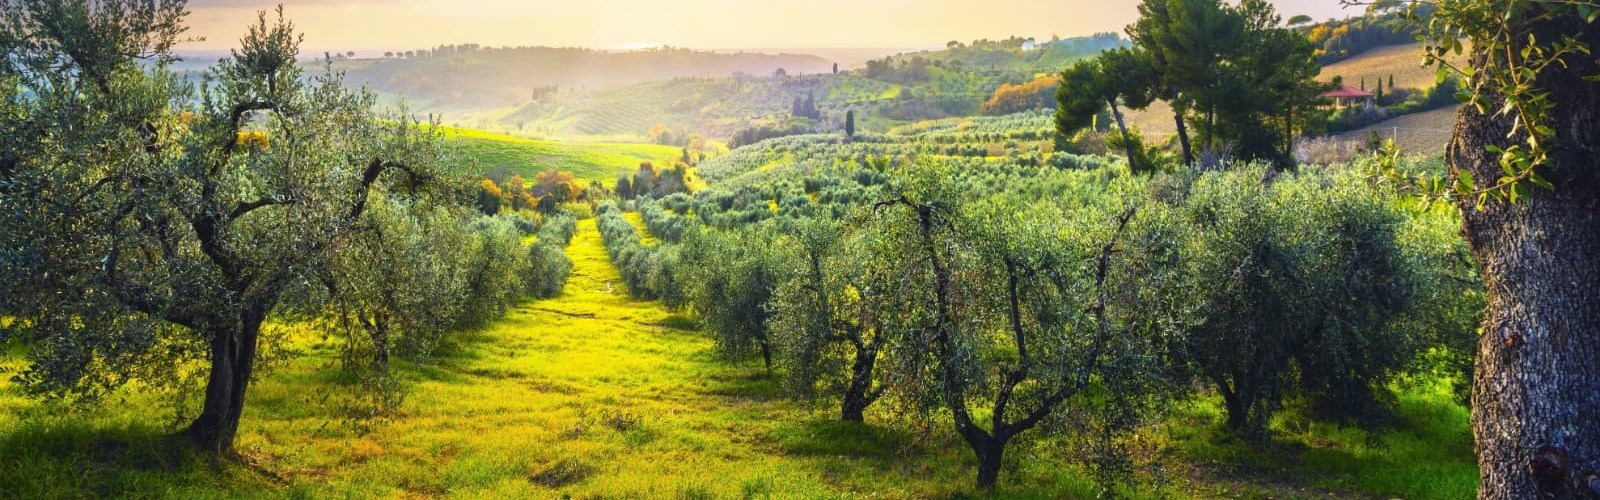 Oliven i Toscana i Italien